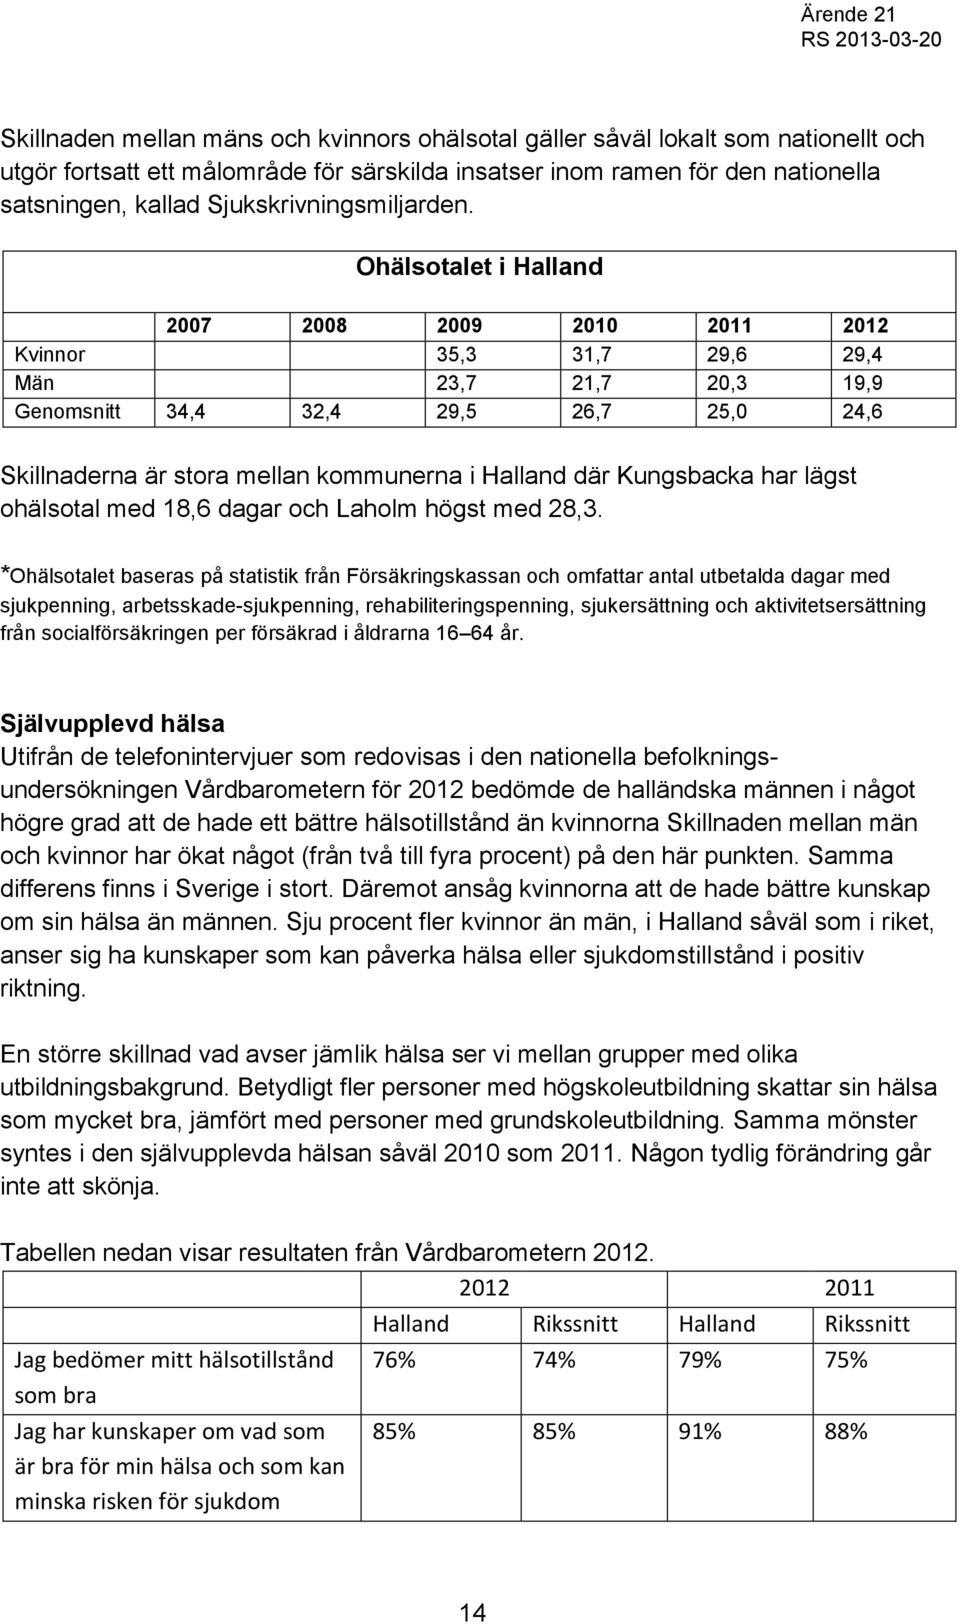 Ohälsotalet i Halland 2007 2008 2009 2010 2011 2012 Kvinnor 35,3 31,7 29,6 29,4 Män 23,7 21,7 20,3 19,9 Genomsnitt 34,4 32,4 29,5 26,7 25,0 24,6 Skillnaderna är stora mellan kommunerna i Halland där